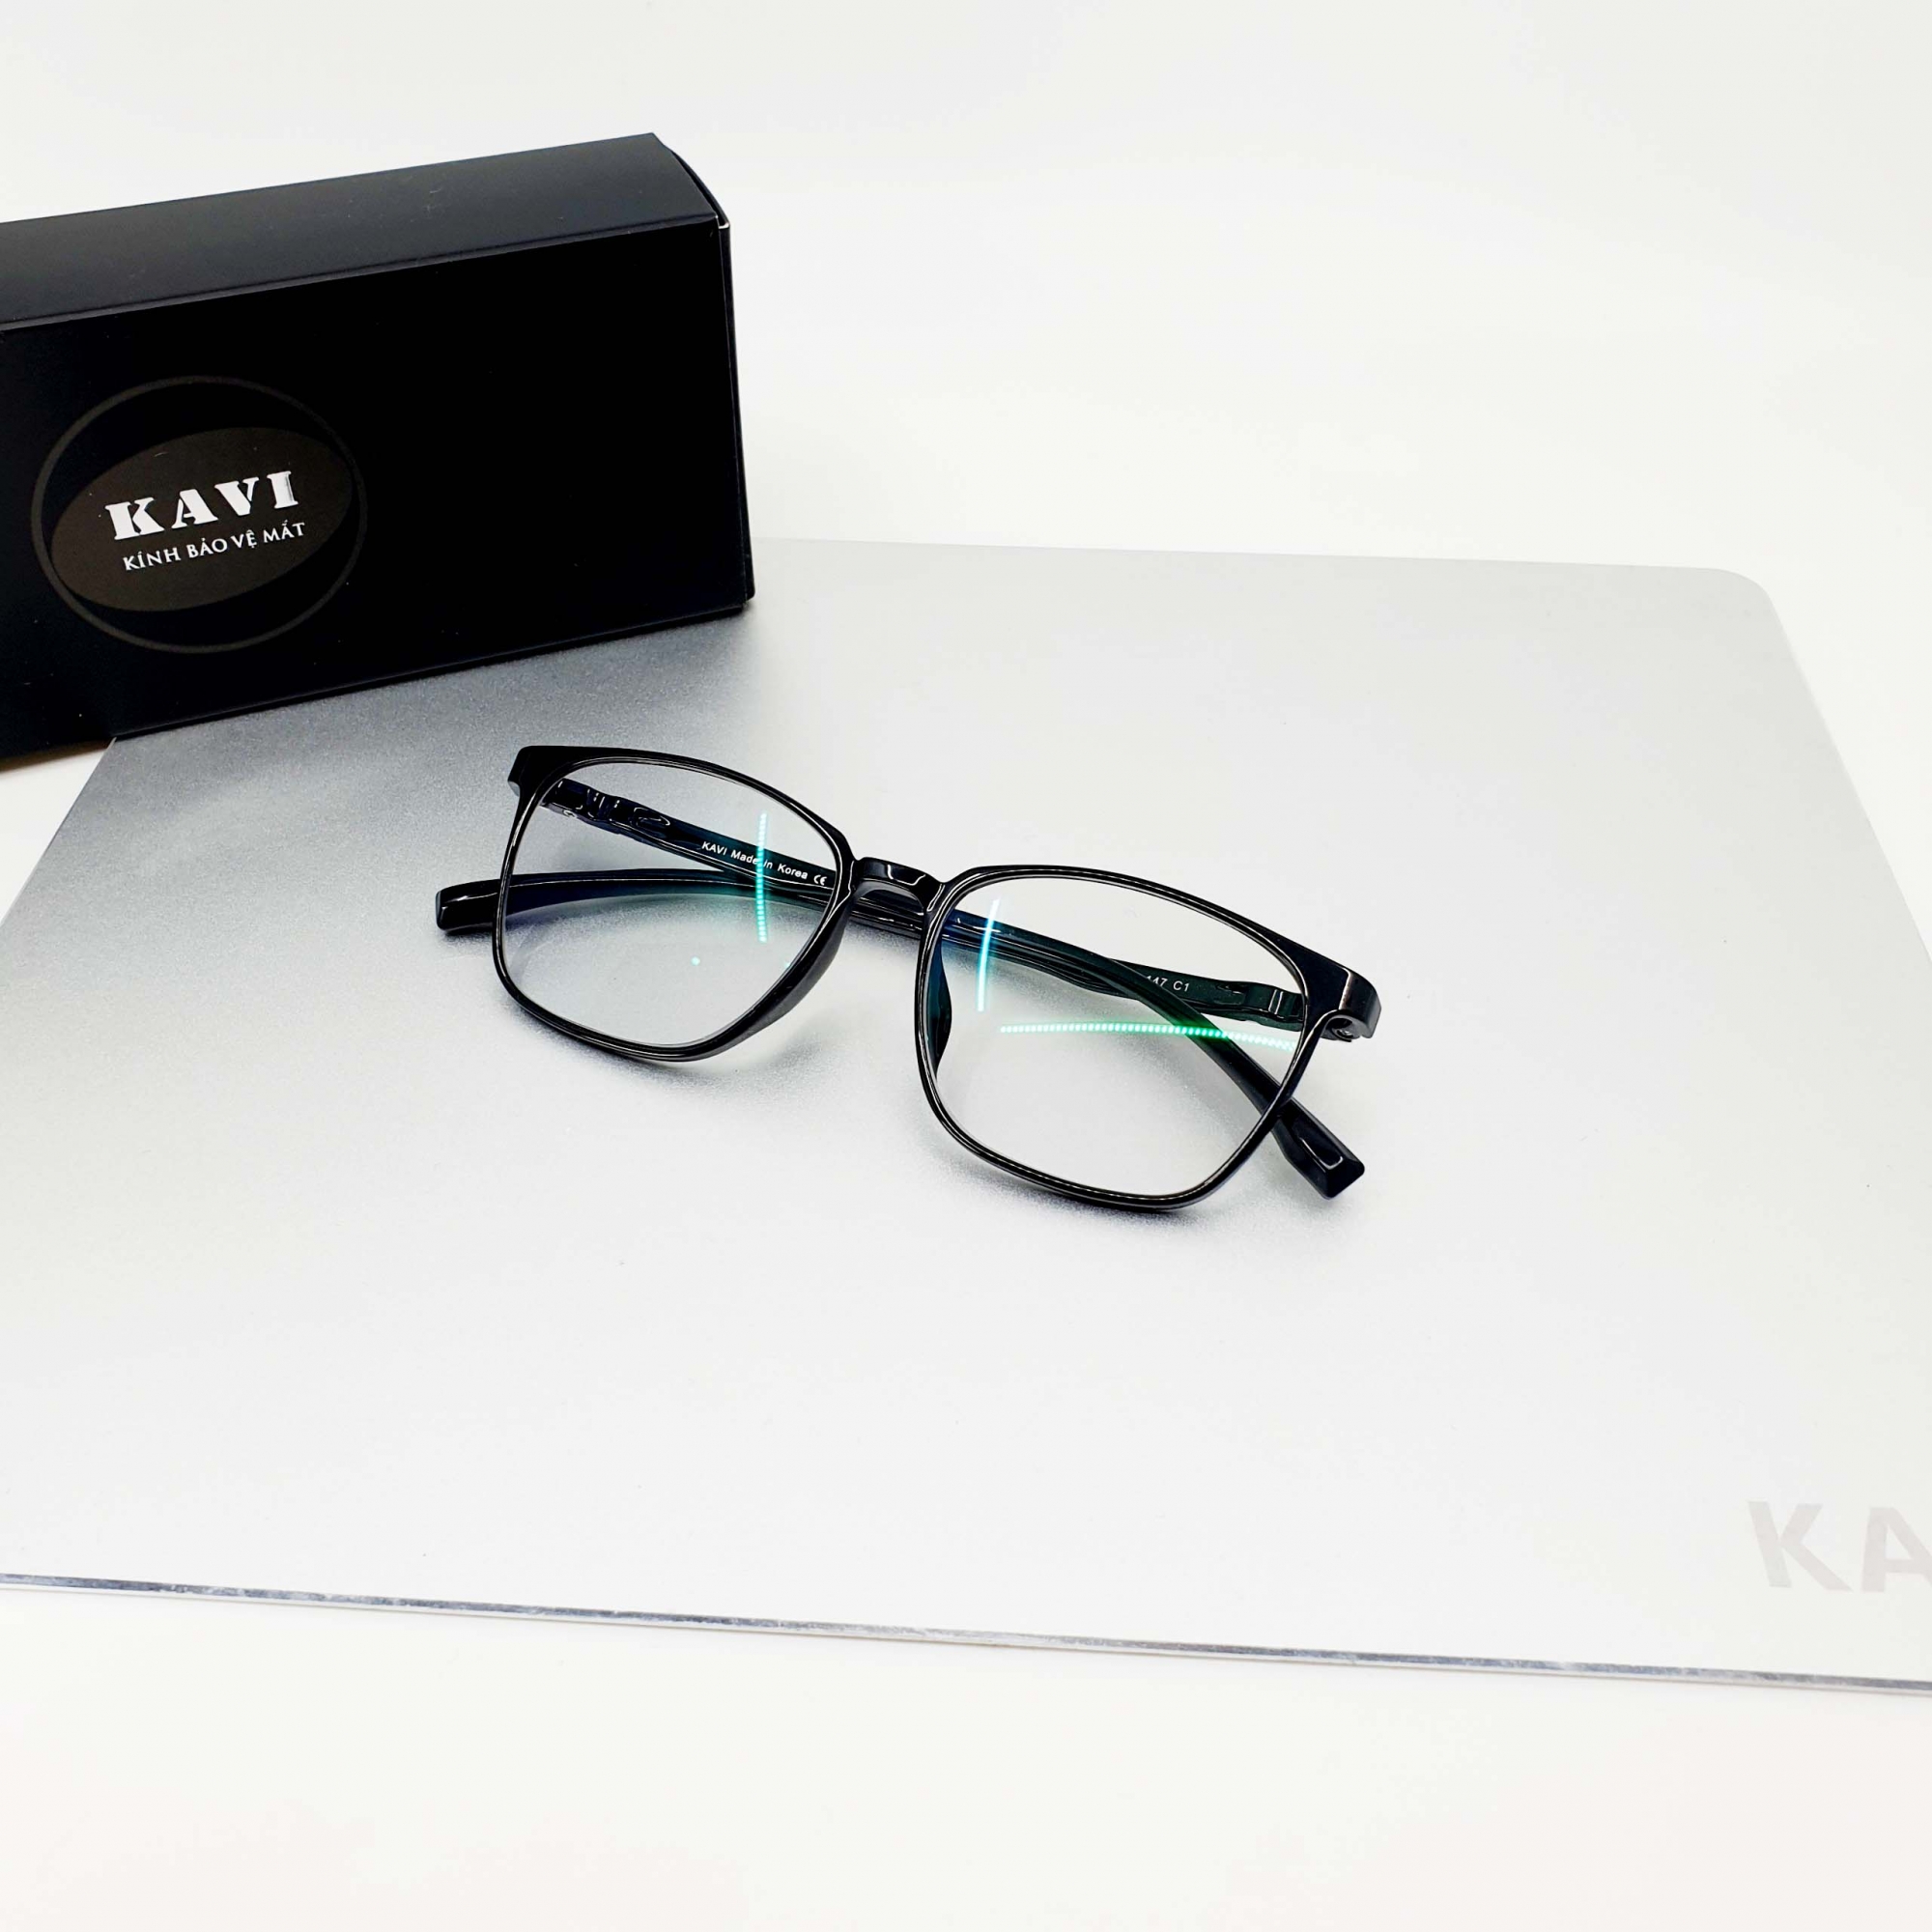 Kính Kavi S6 màu đen - kính dùng máy tính